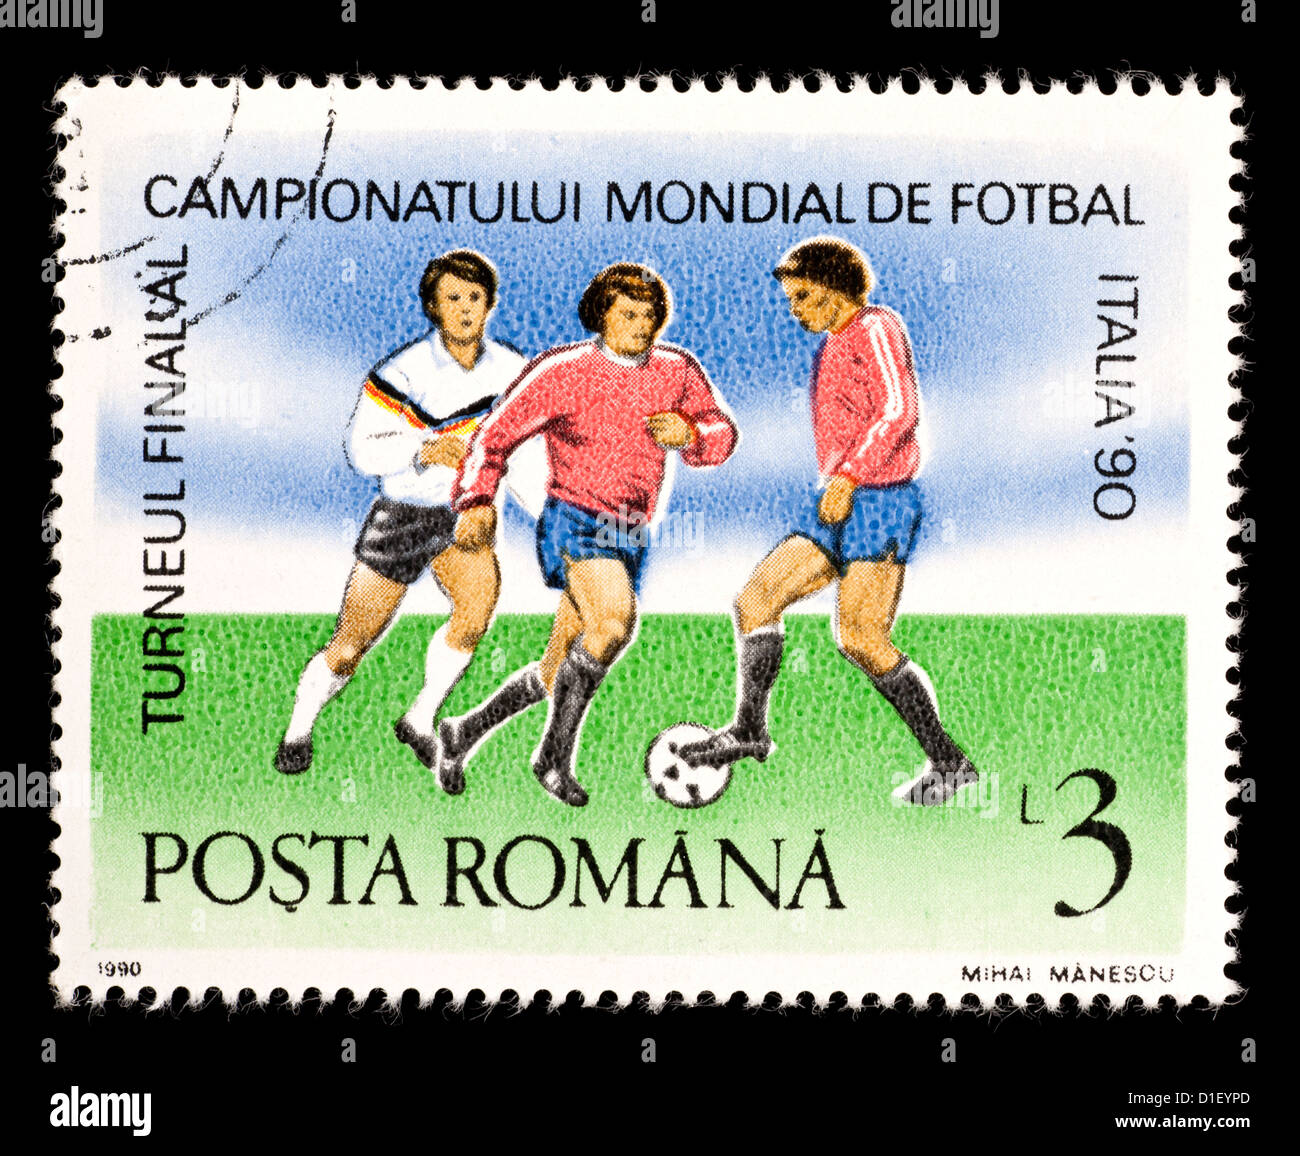 Timbre-poste de Roumanie représentant des joueurs de football, émis pour la Coupe du Monde de Football 1990 en Italie. Banque D'Images